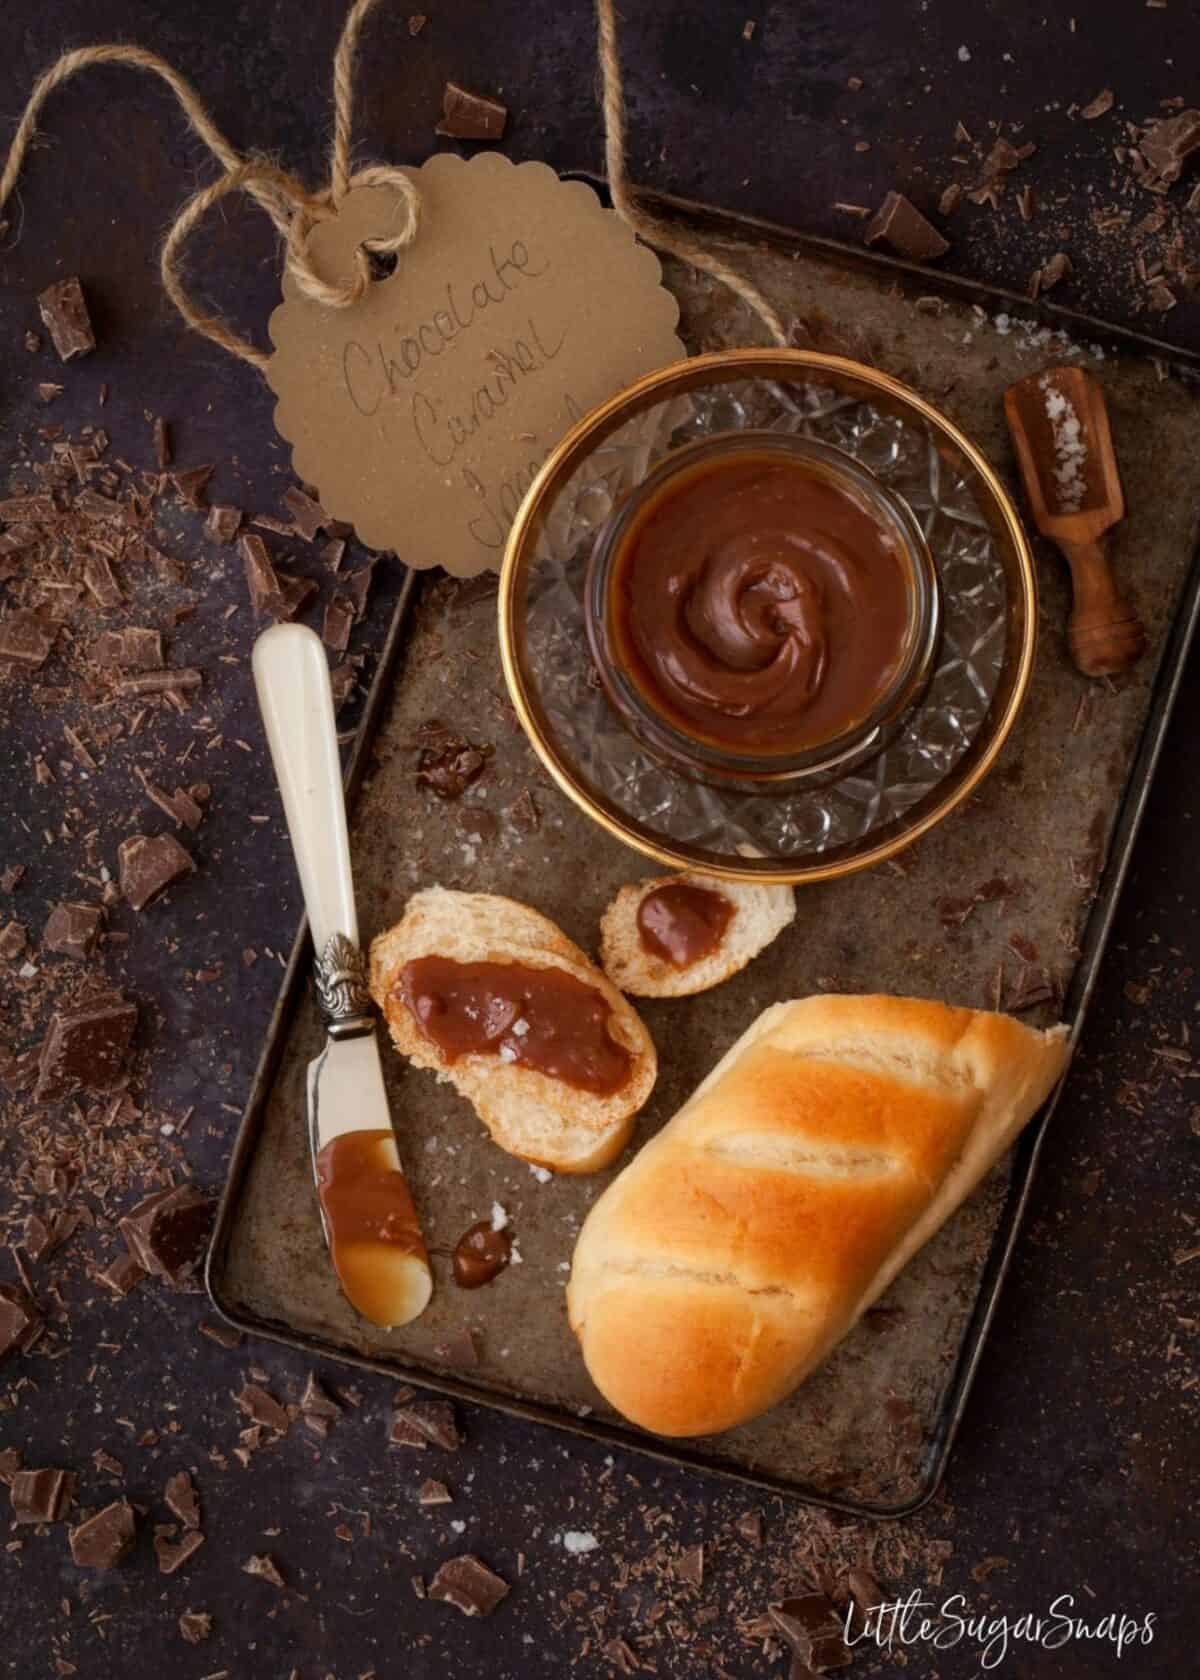 Chocolate Caramel Spread being spread on a small brioche roll.